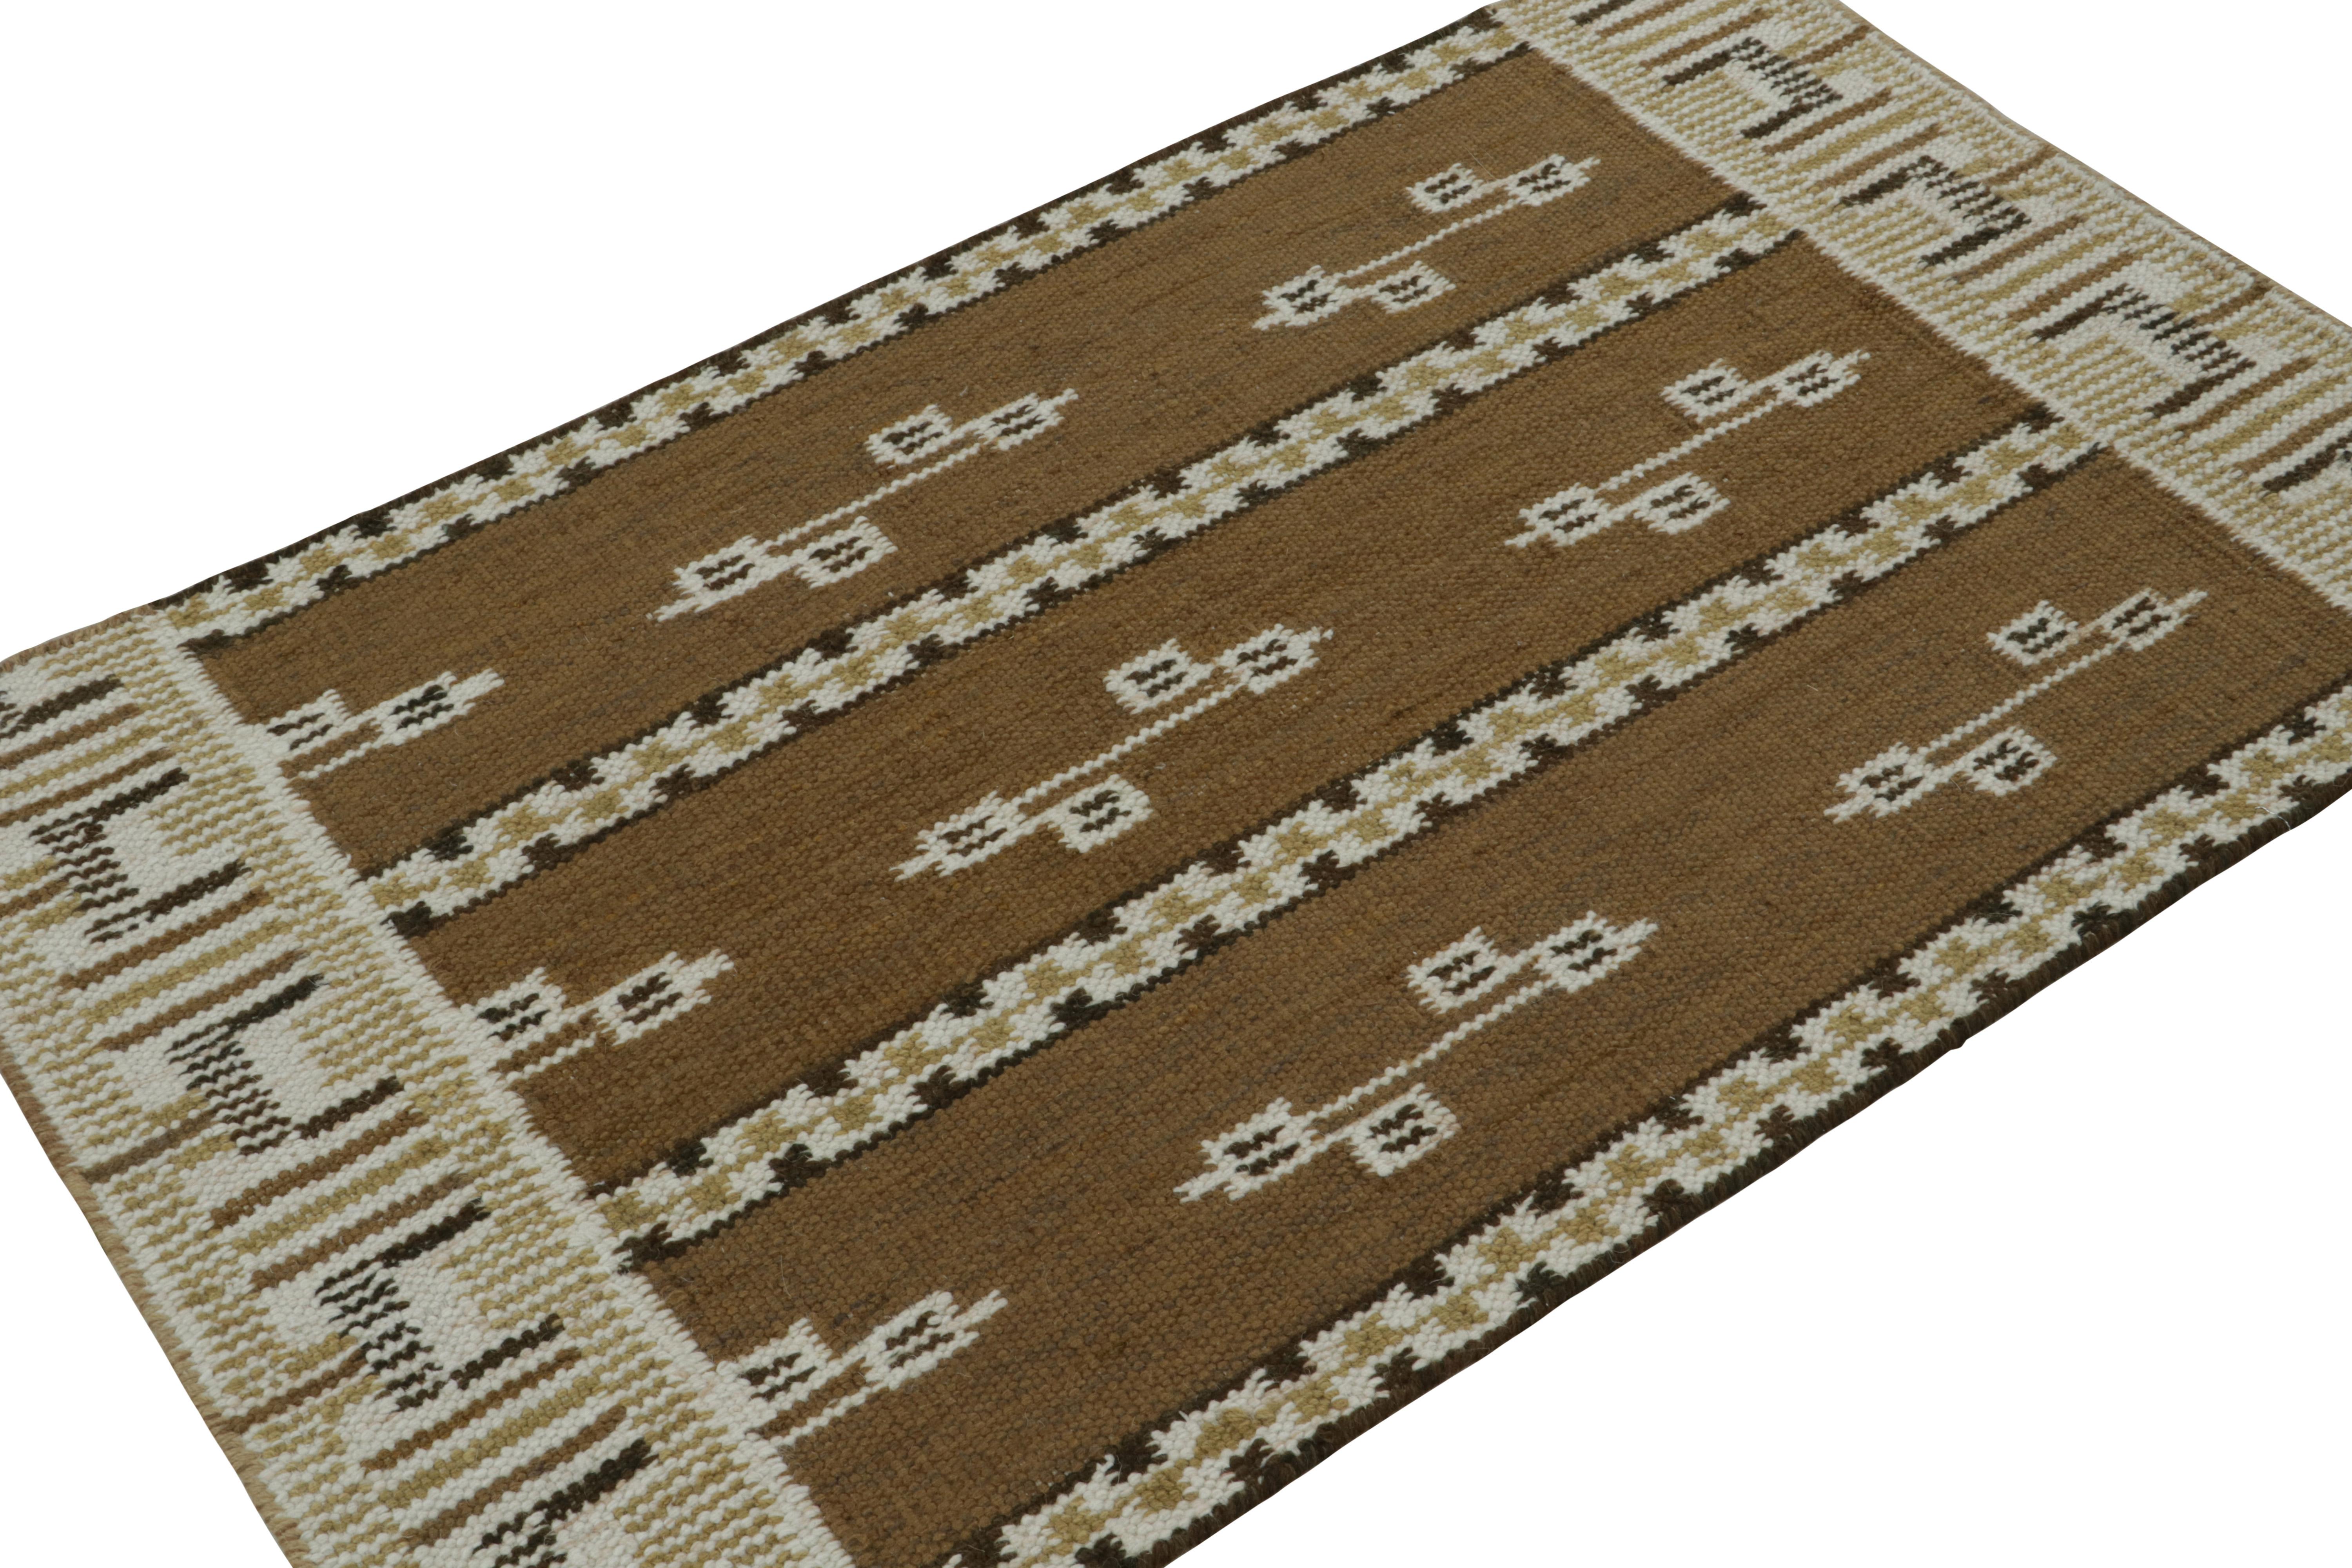 Ce tapis Kilim 3x5 est issu de la ligne flatweave de la collection de tapis scandinaves de Rug & Kilim. Tissé à la main en laine, coton et fils naturels, son design est une reprise moderne des tapis Rollakan et Rya dans le style déco suédois. 

Sur